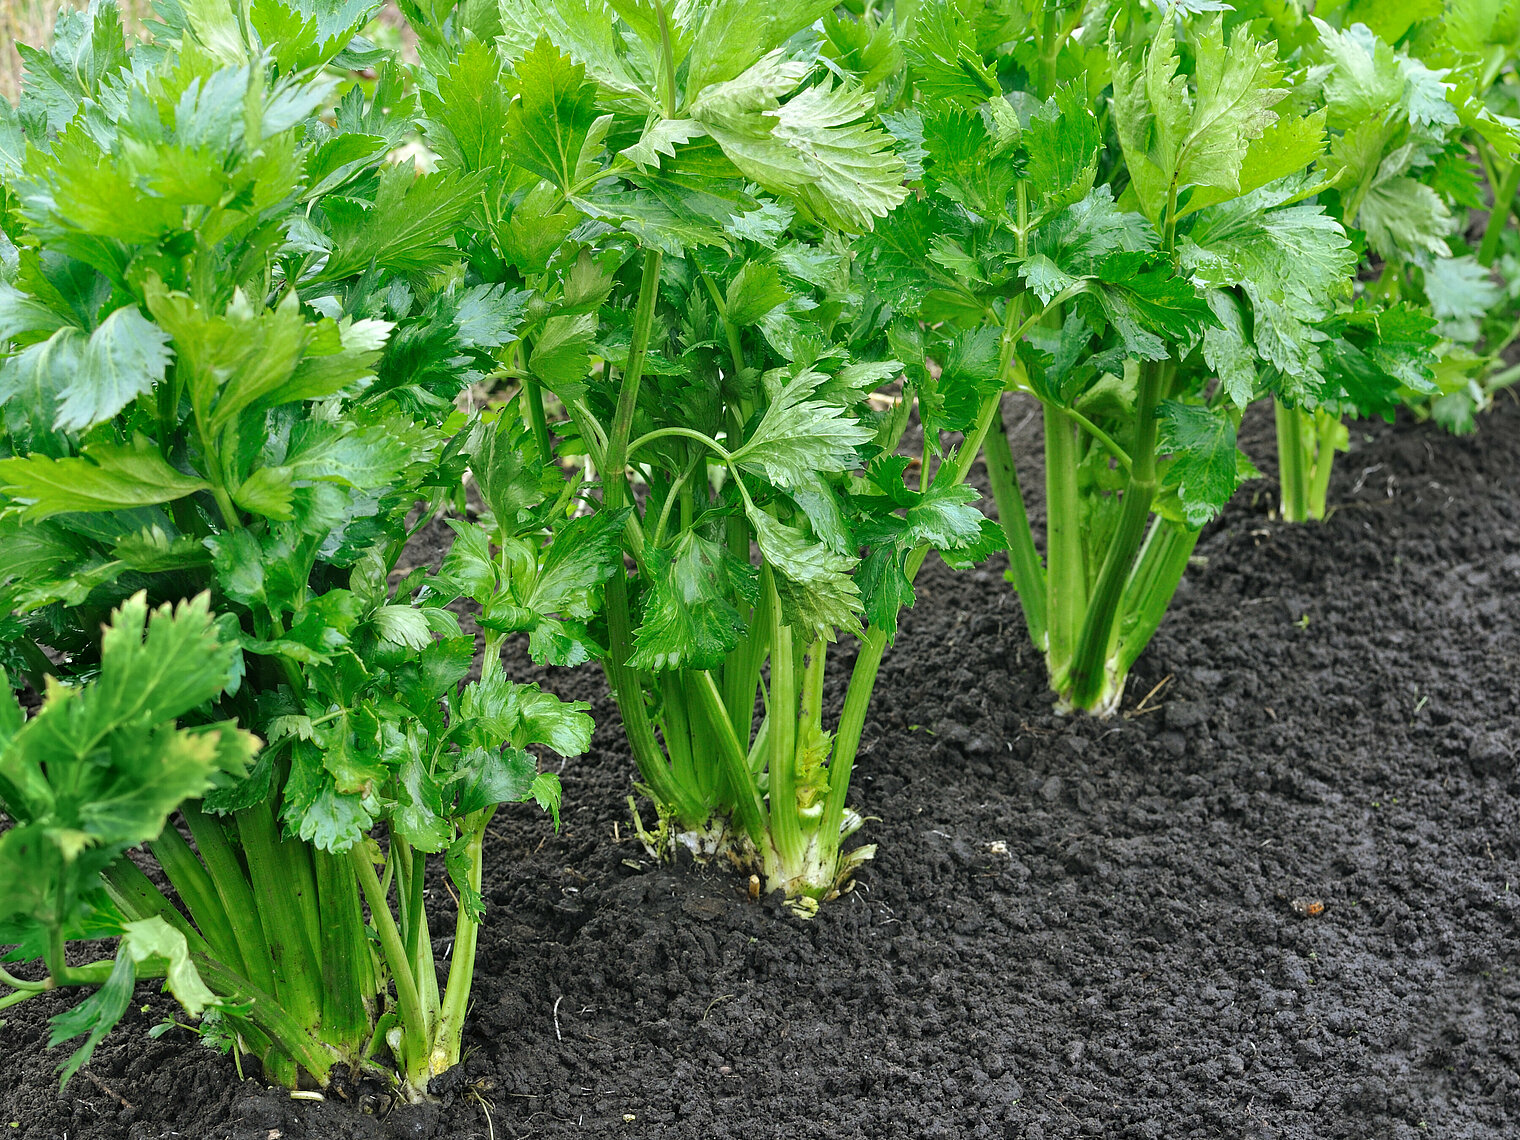 Celery cultivation